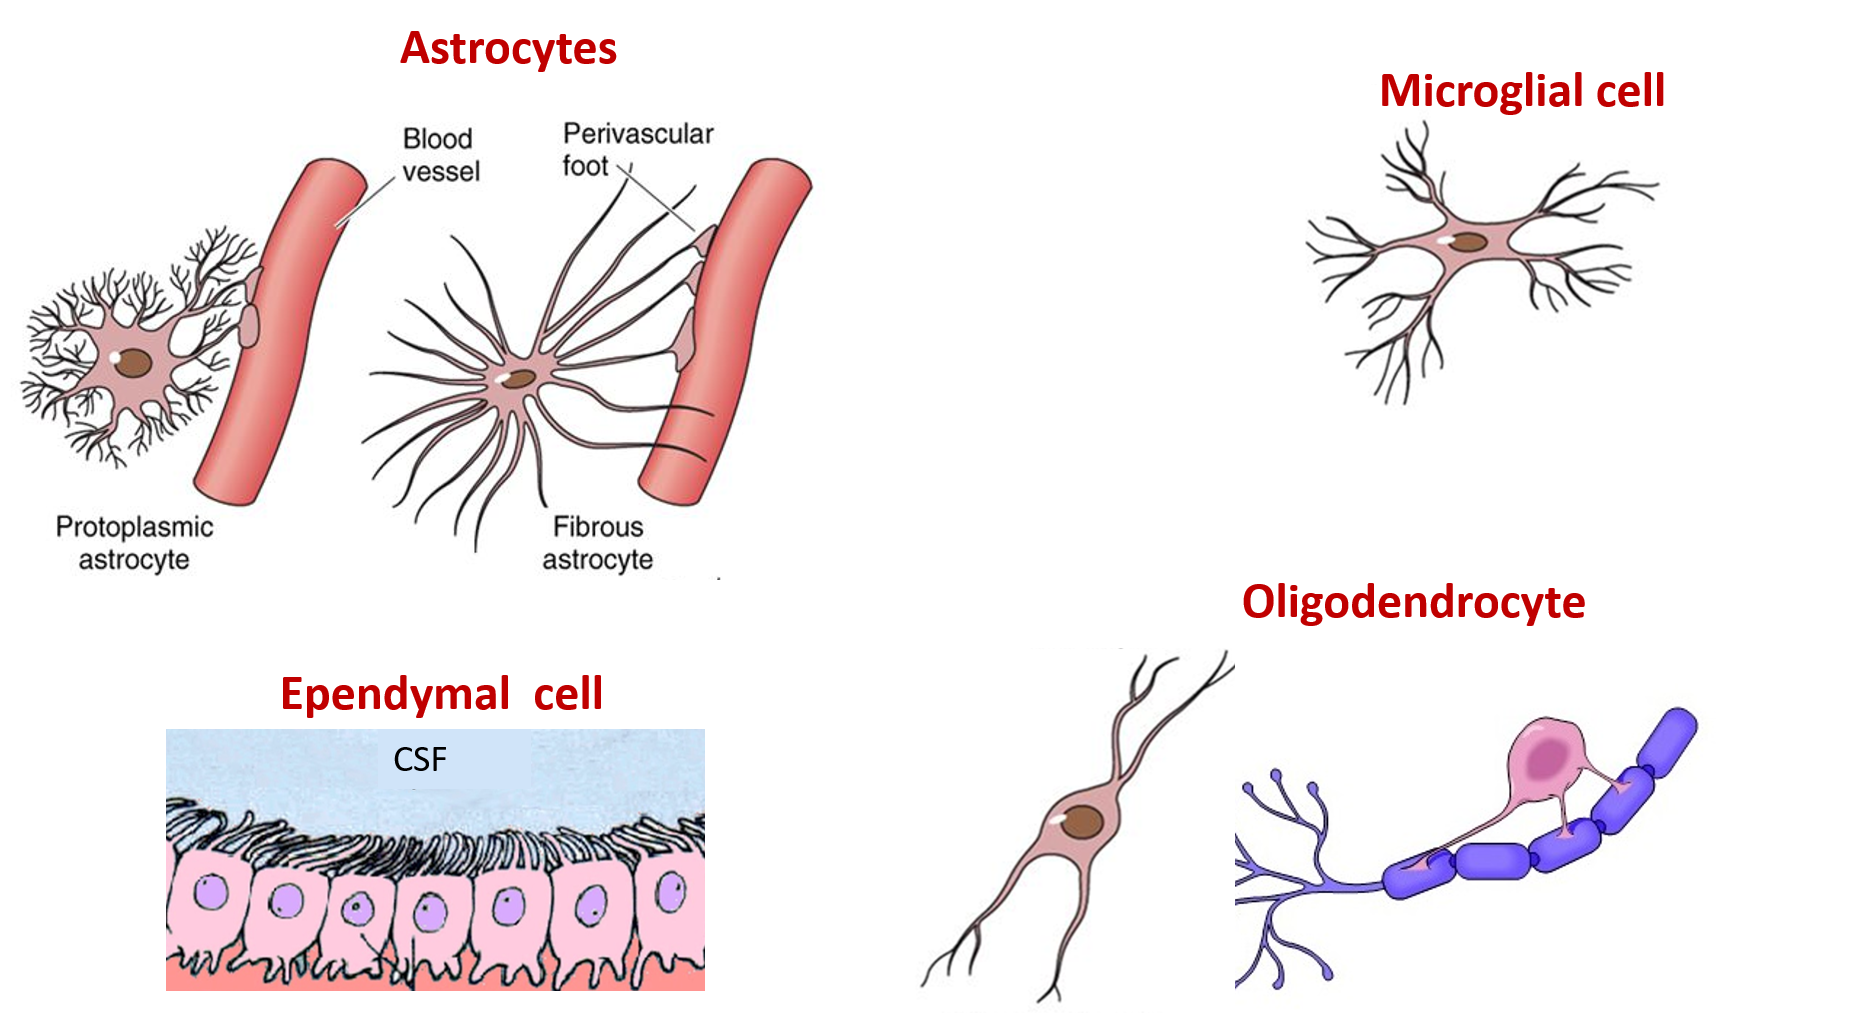 Glial cells